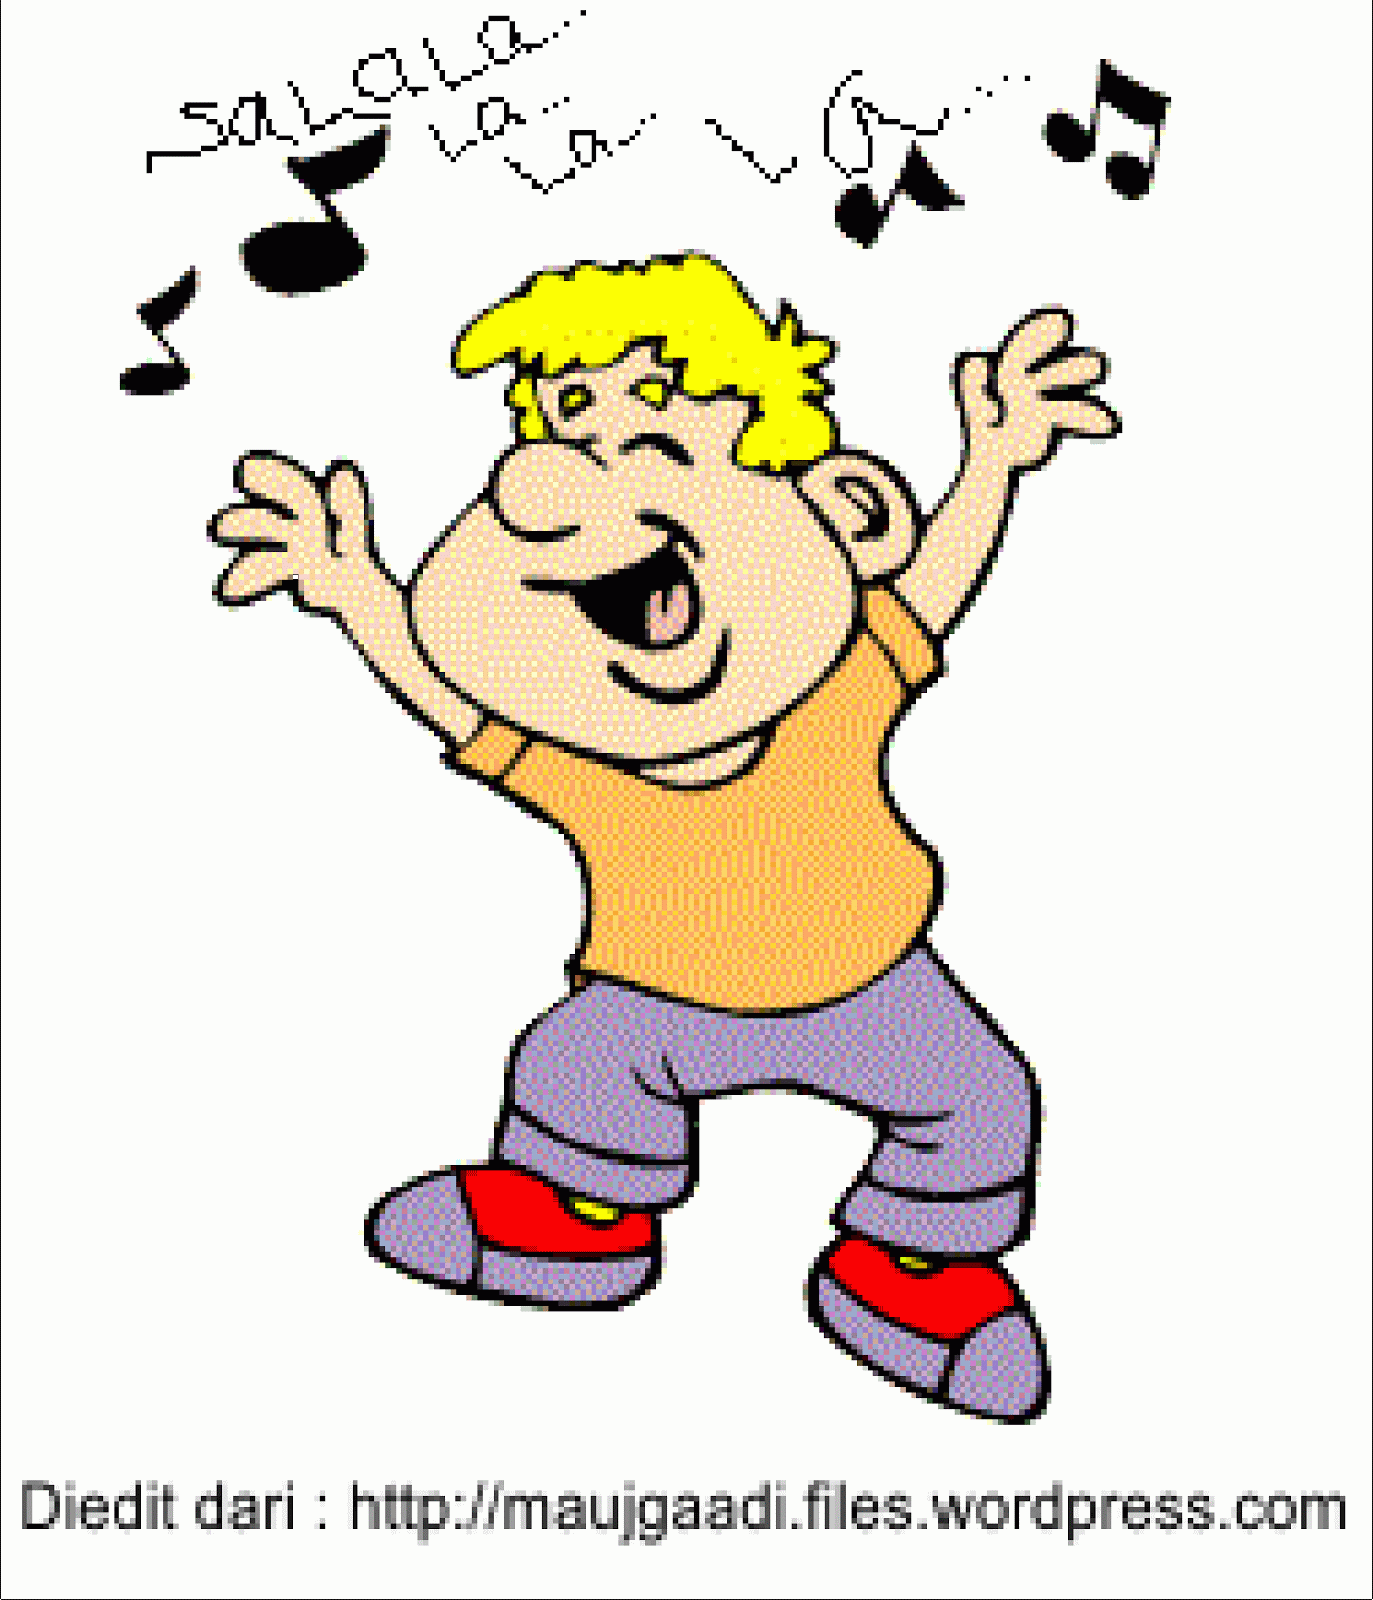 He like to sing. Sing анимация. They are Dancing мультяшный. Гифки действия. I can Dance для дошкольников.